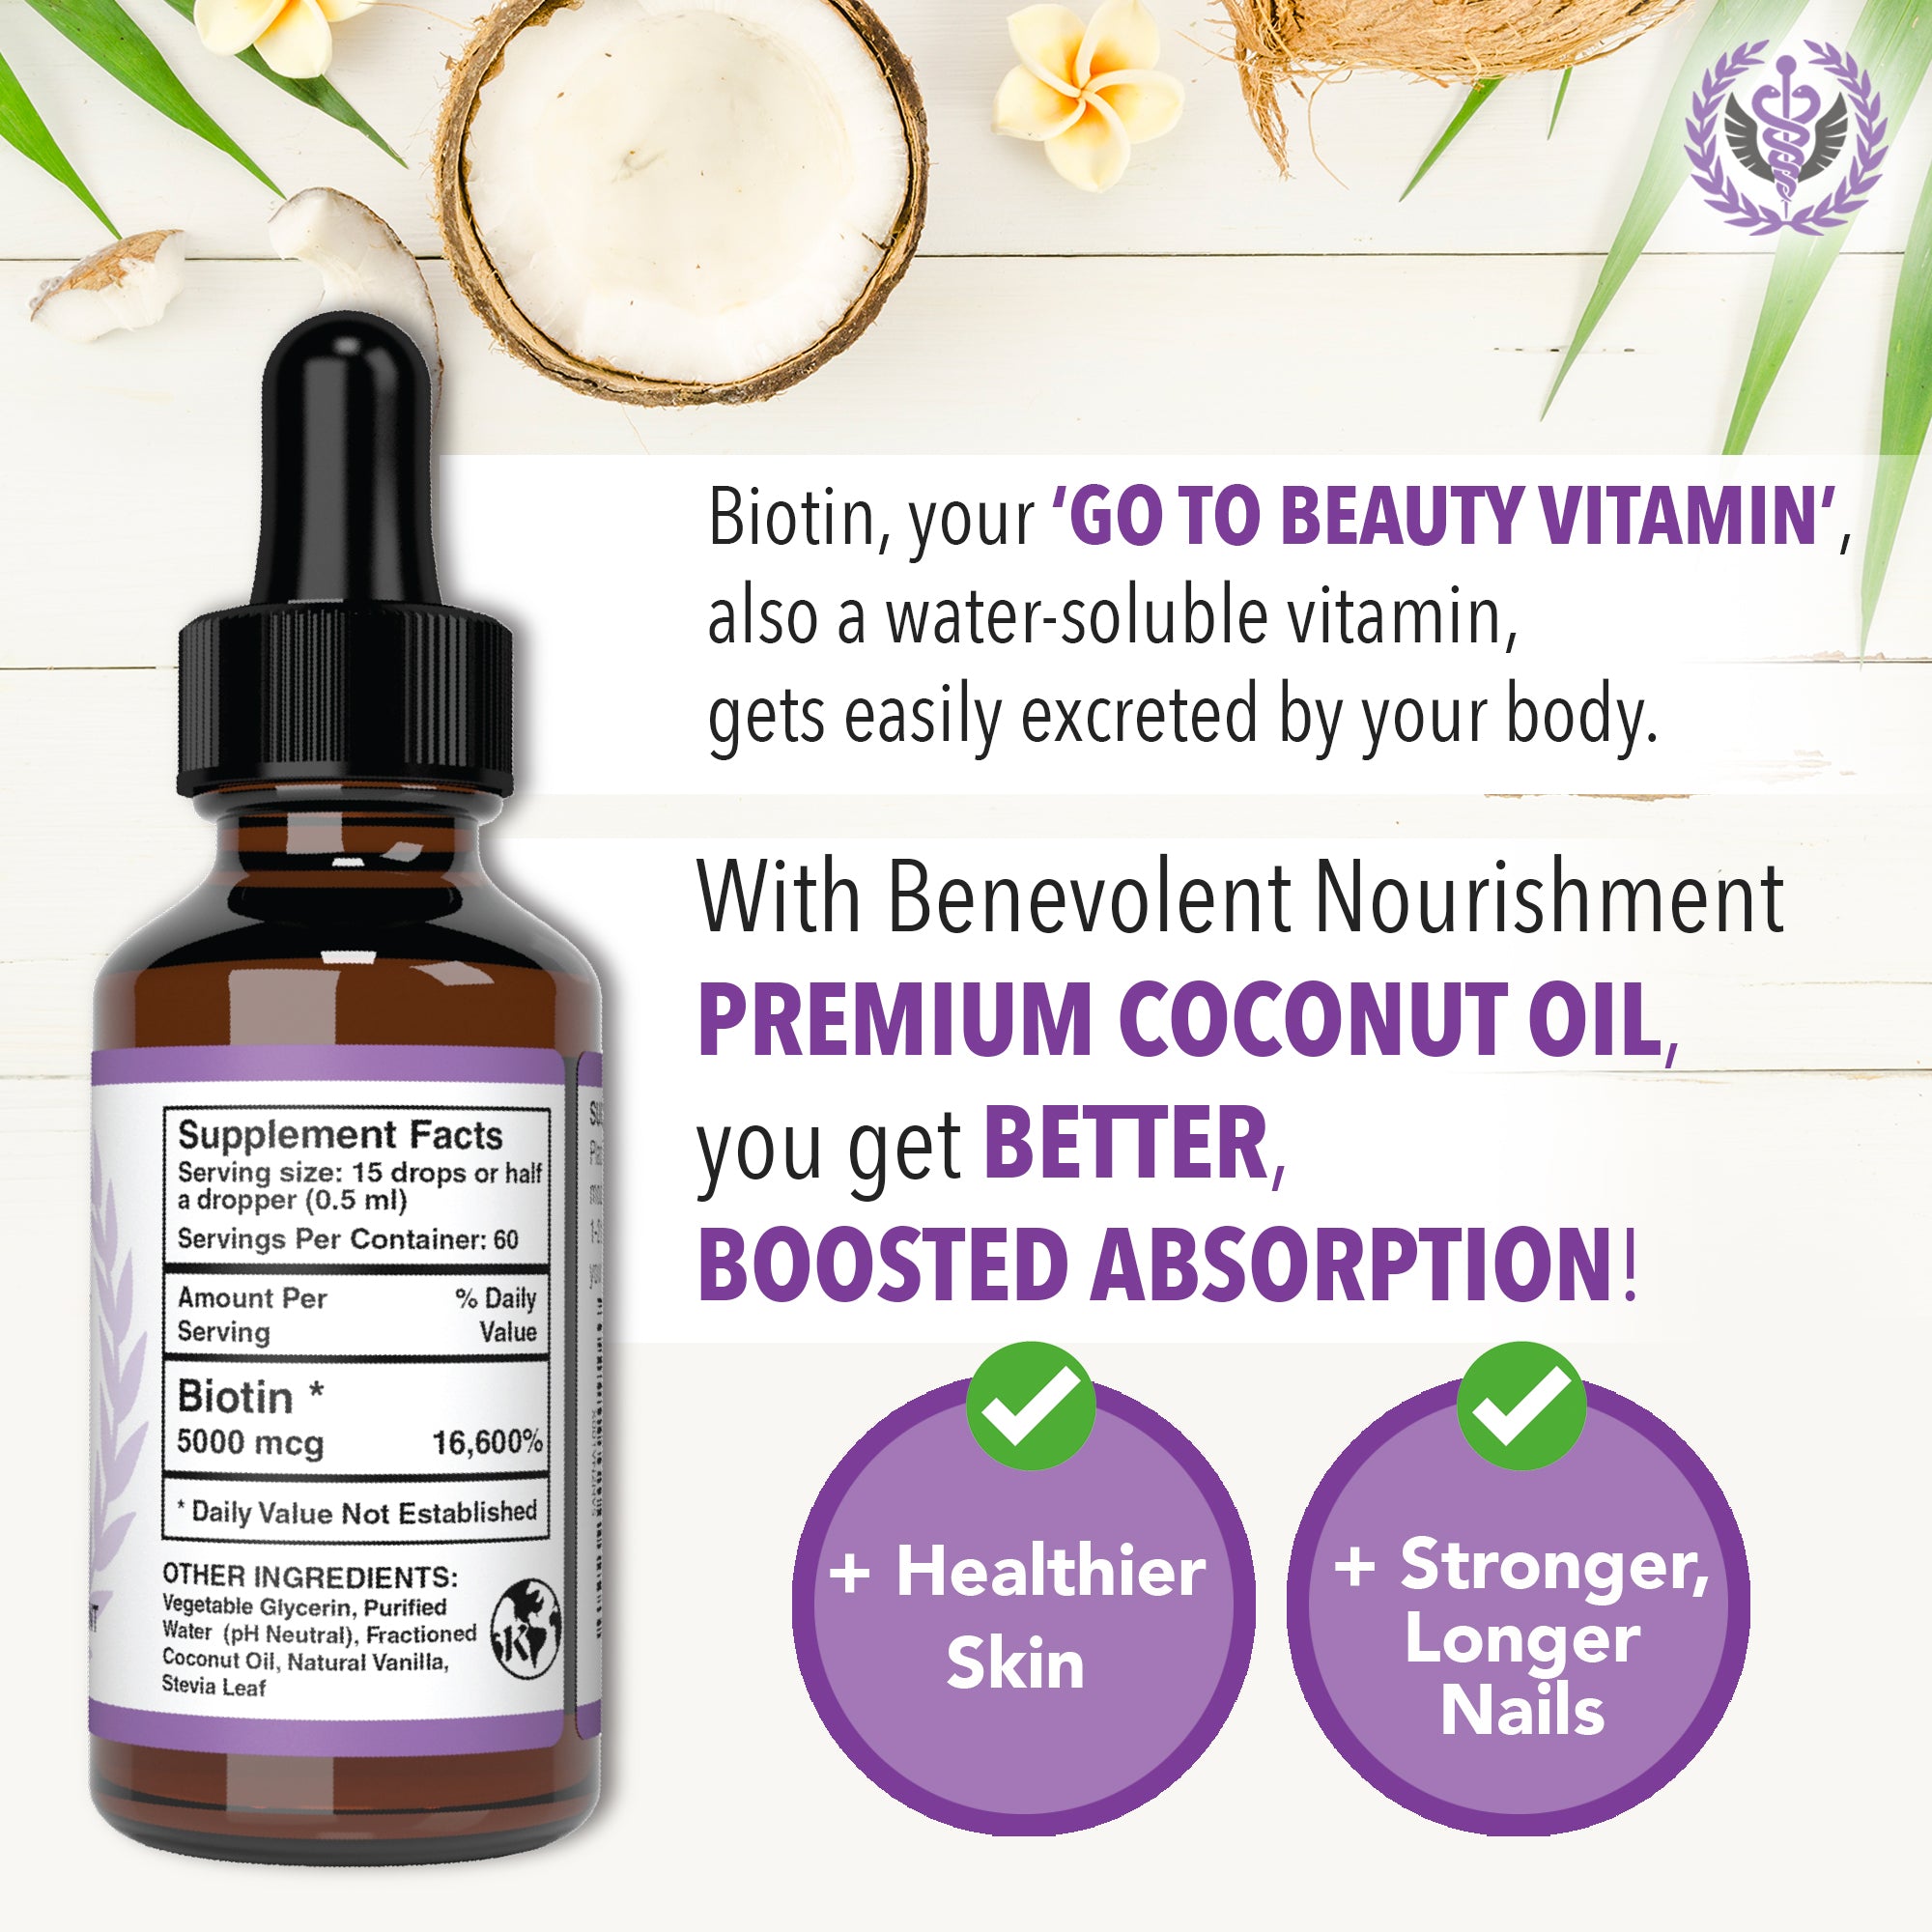 Biotin the go-to beauty vitamin